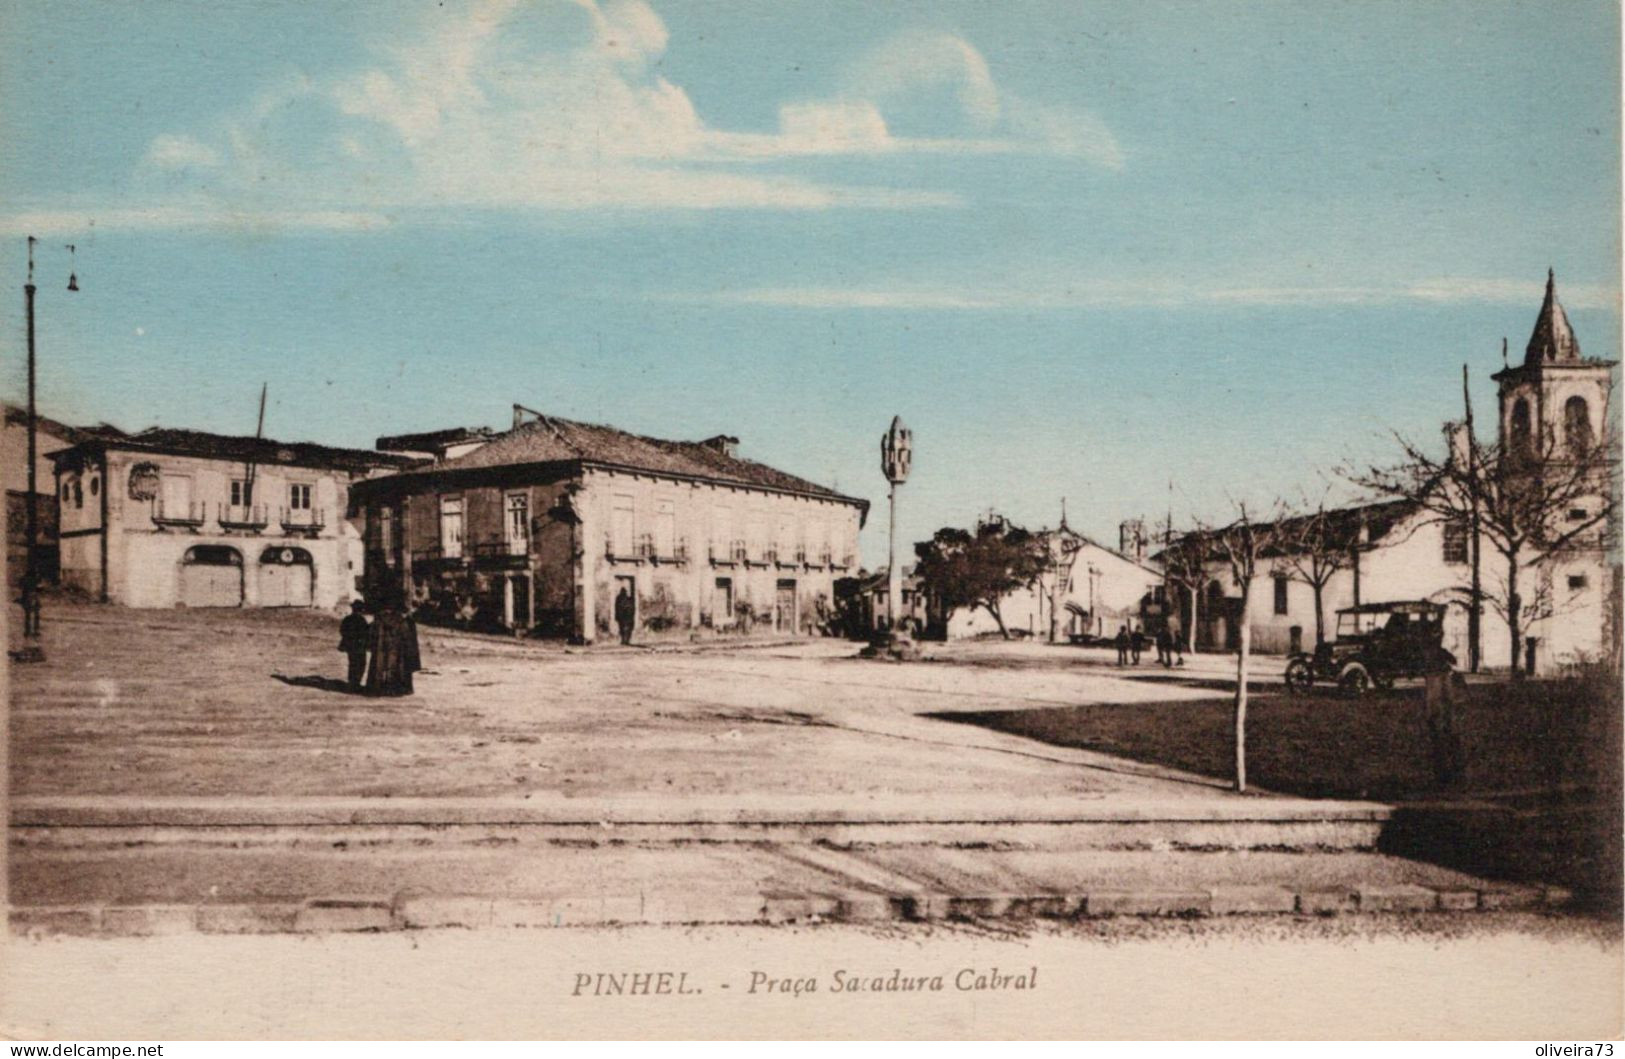 PINHEL - Praça Sacadura Cabral - PORTUGAL - Guarda